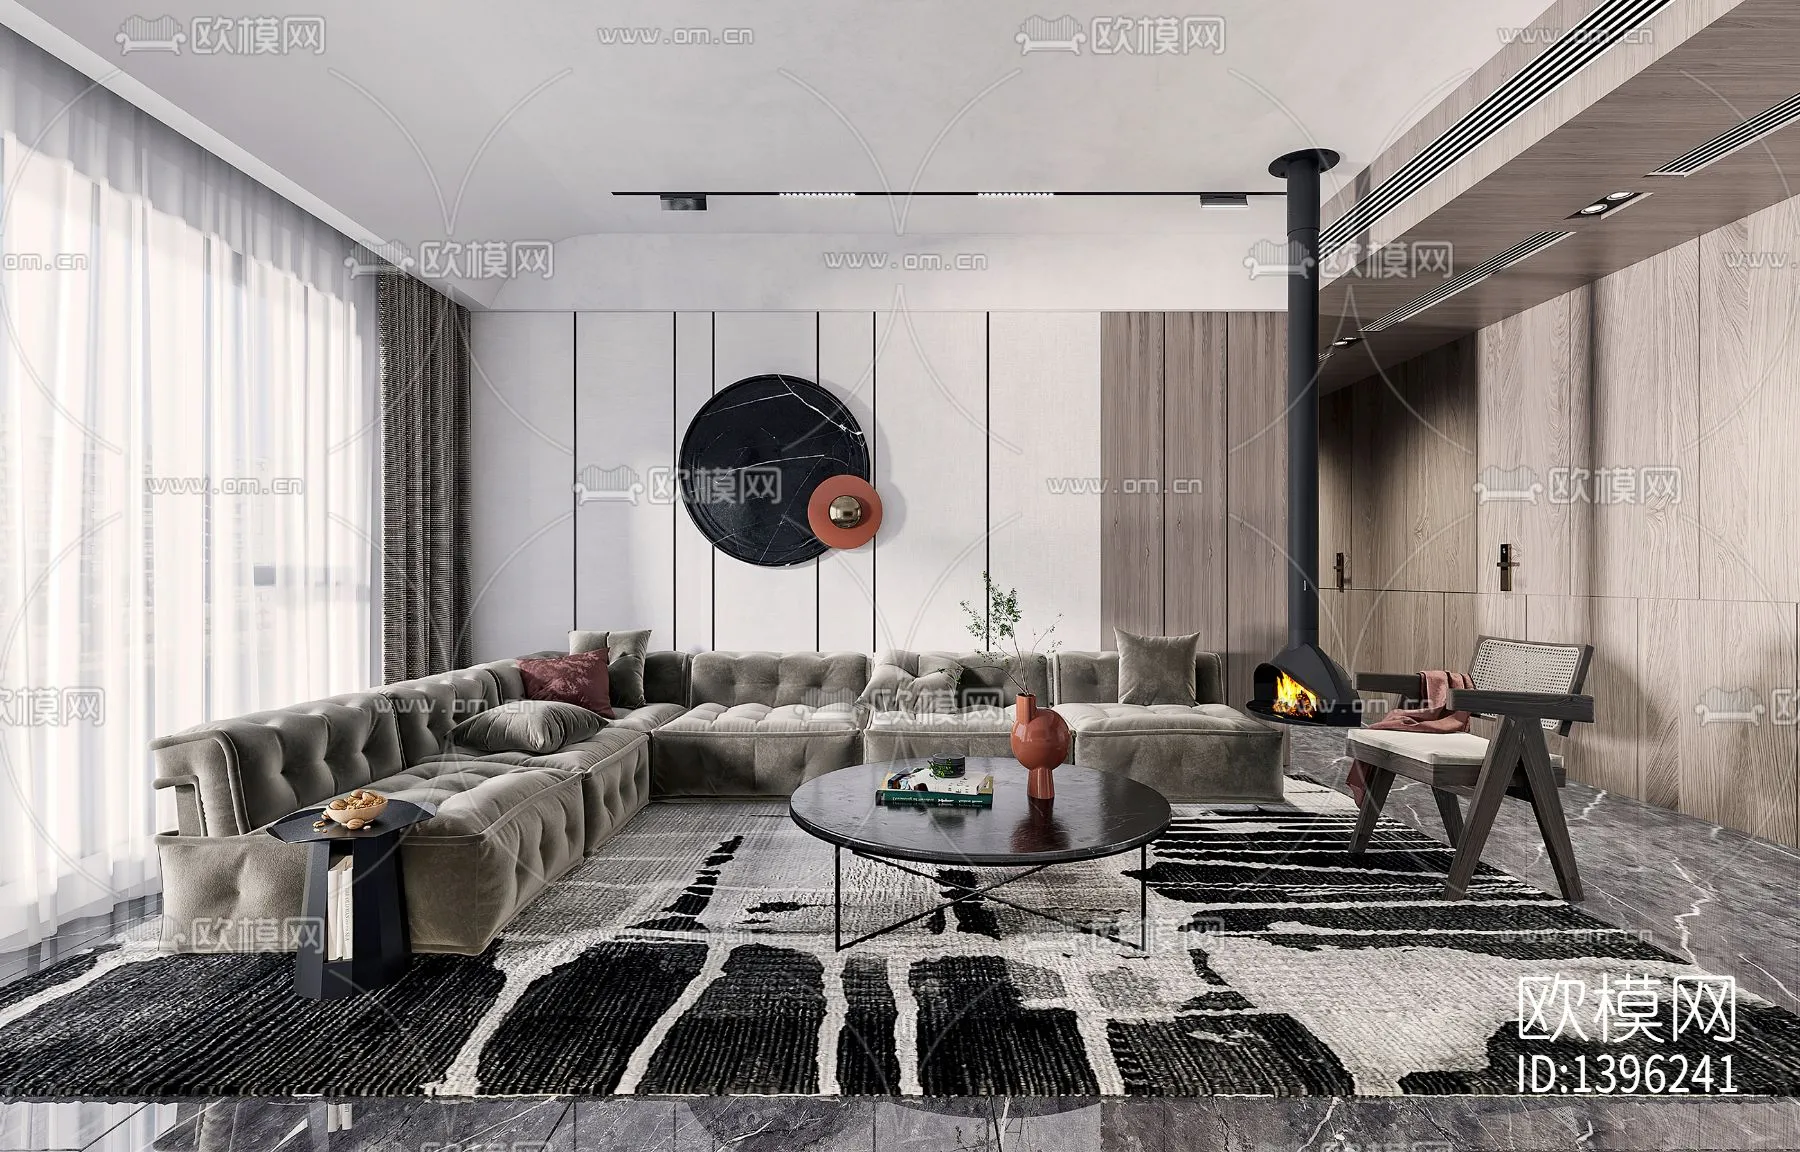 Living Room 3D Scenes – 0602